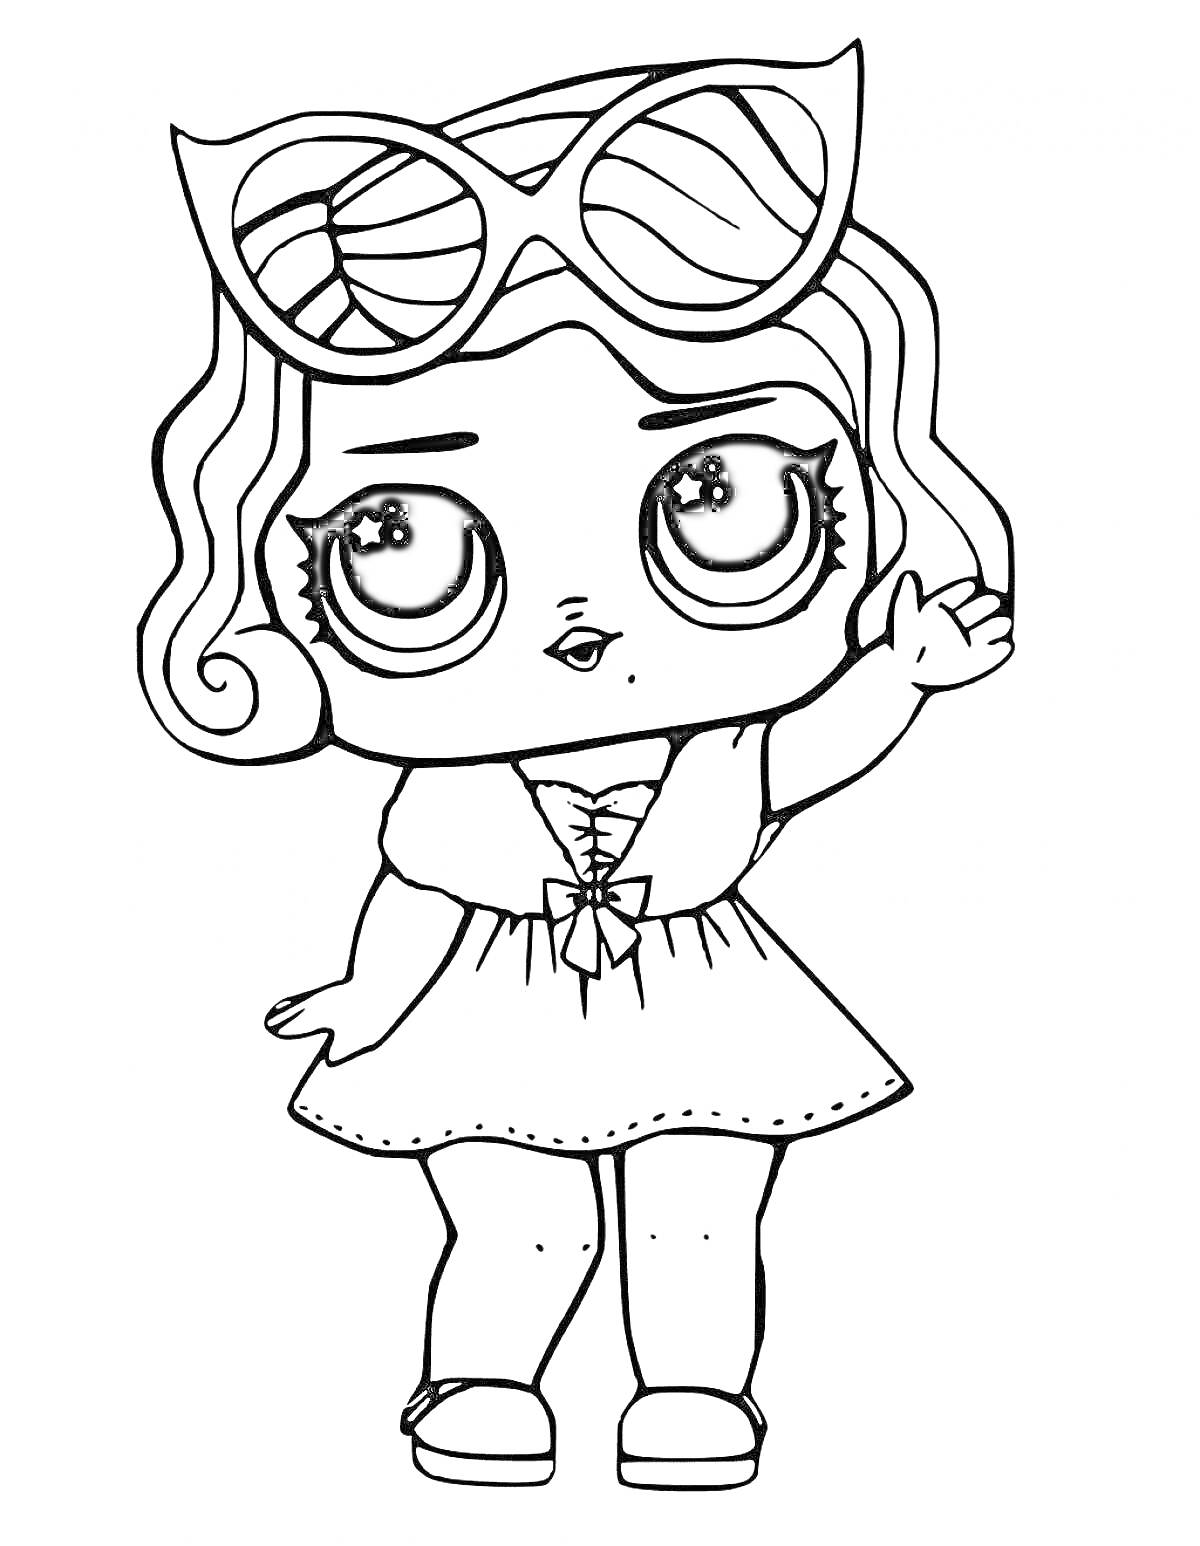 Раскраска Кукла ЛОЛ с волнистыми волосами и большими очками, в платье с короткими рукавами и туфлями, машет рукой